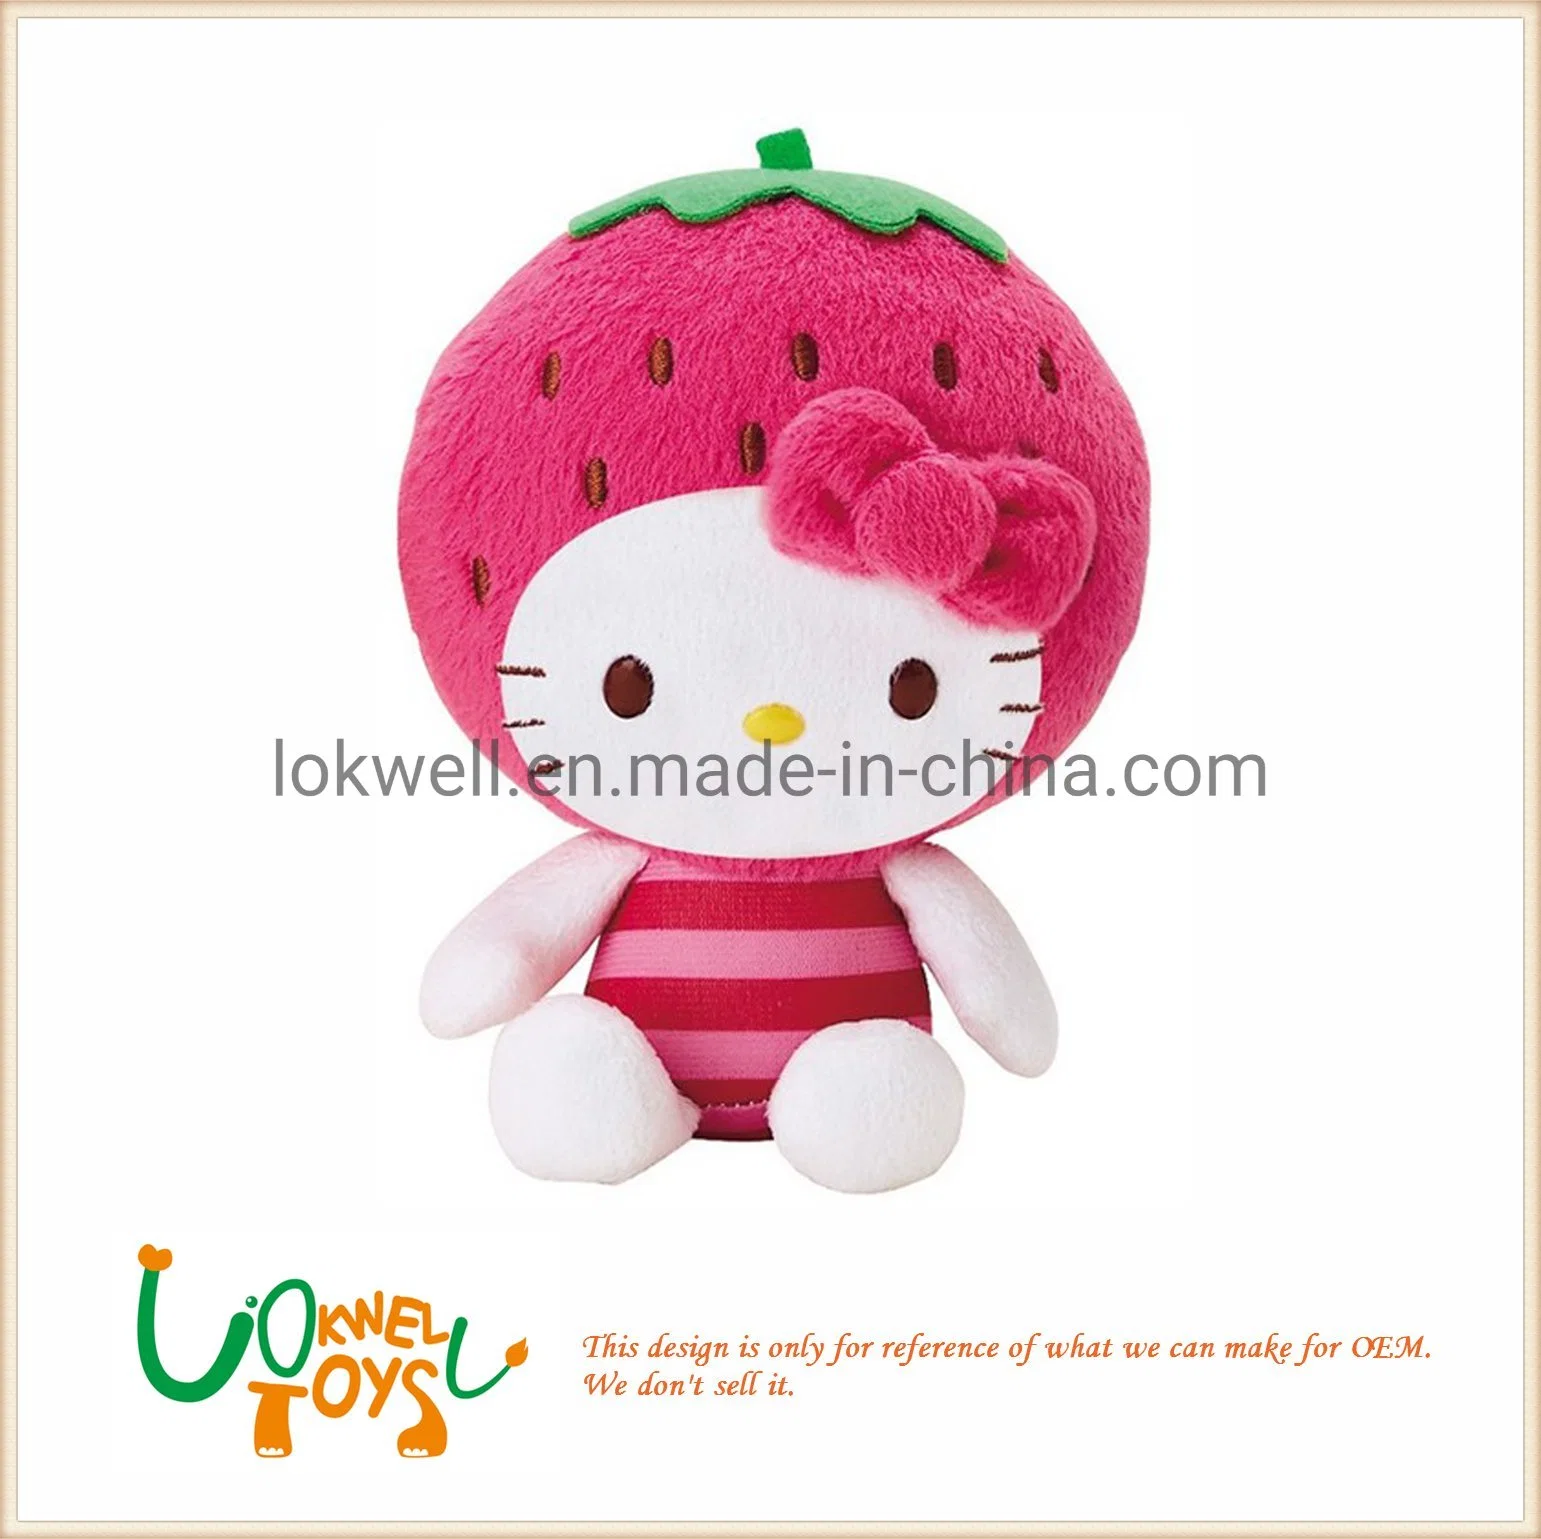 Boneca de pelúcia recheada de frutas Hello Kitty Strawberry Toys.